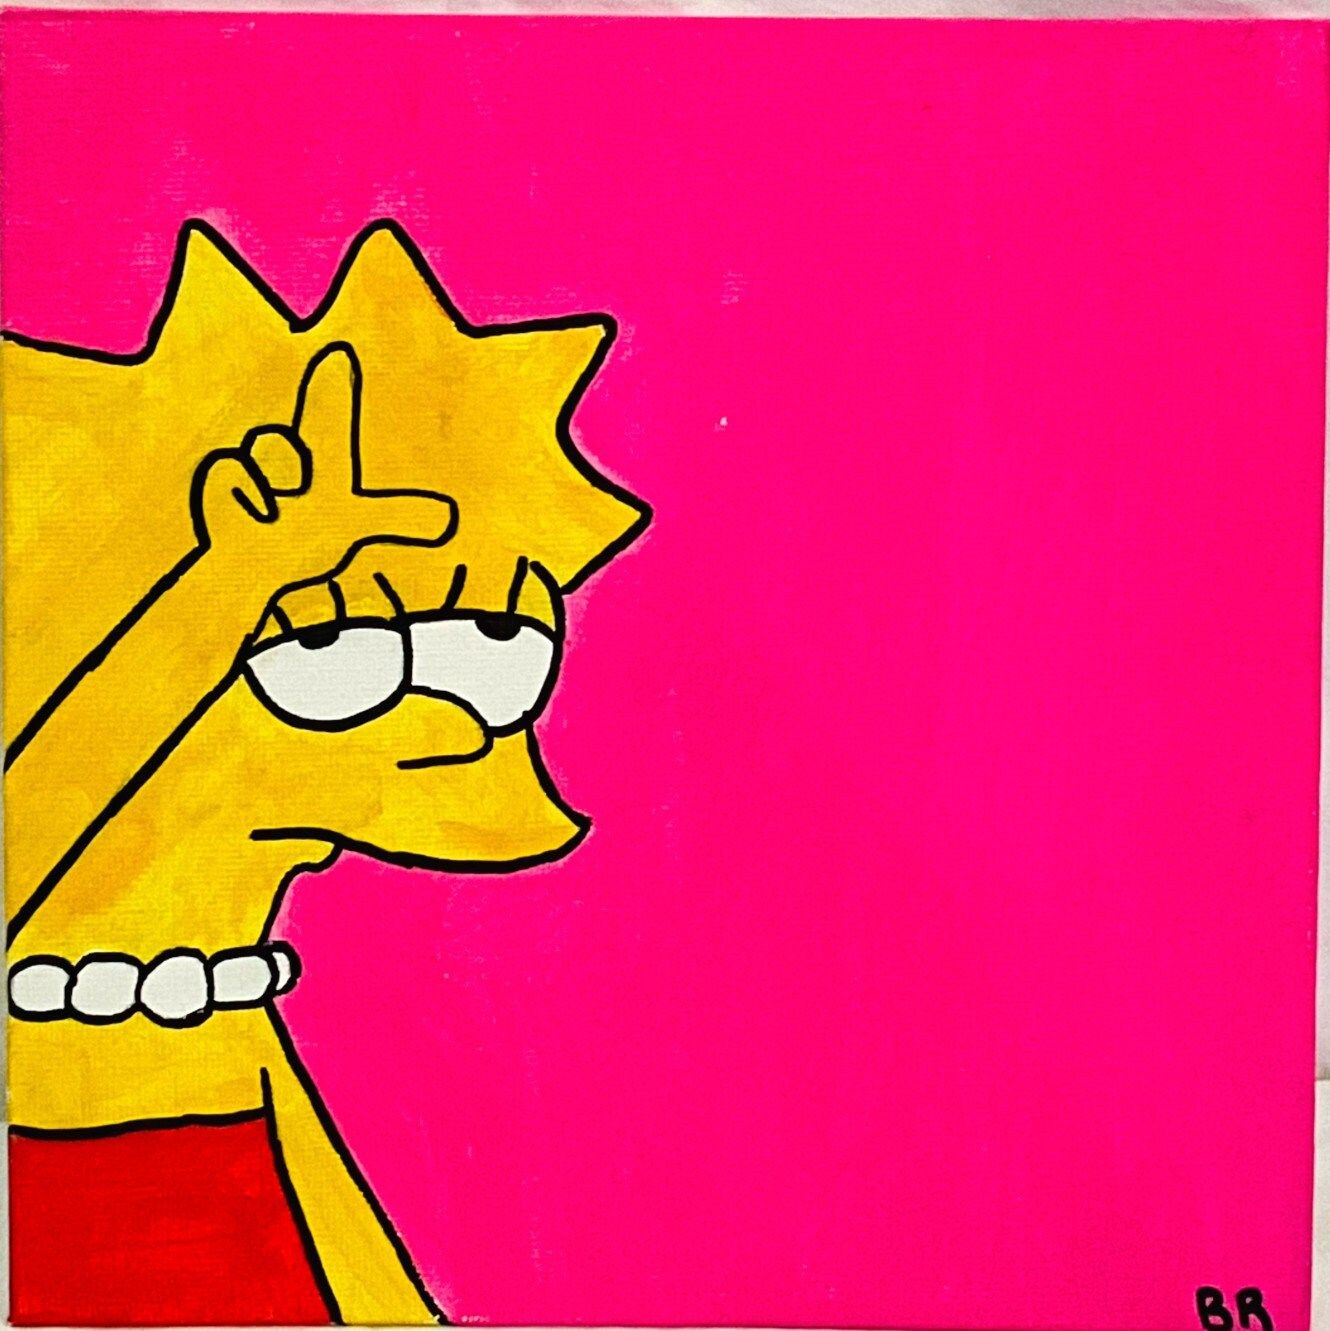 Lisa Simpson on a pink background - Lisa Simpson